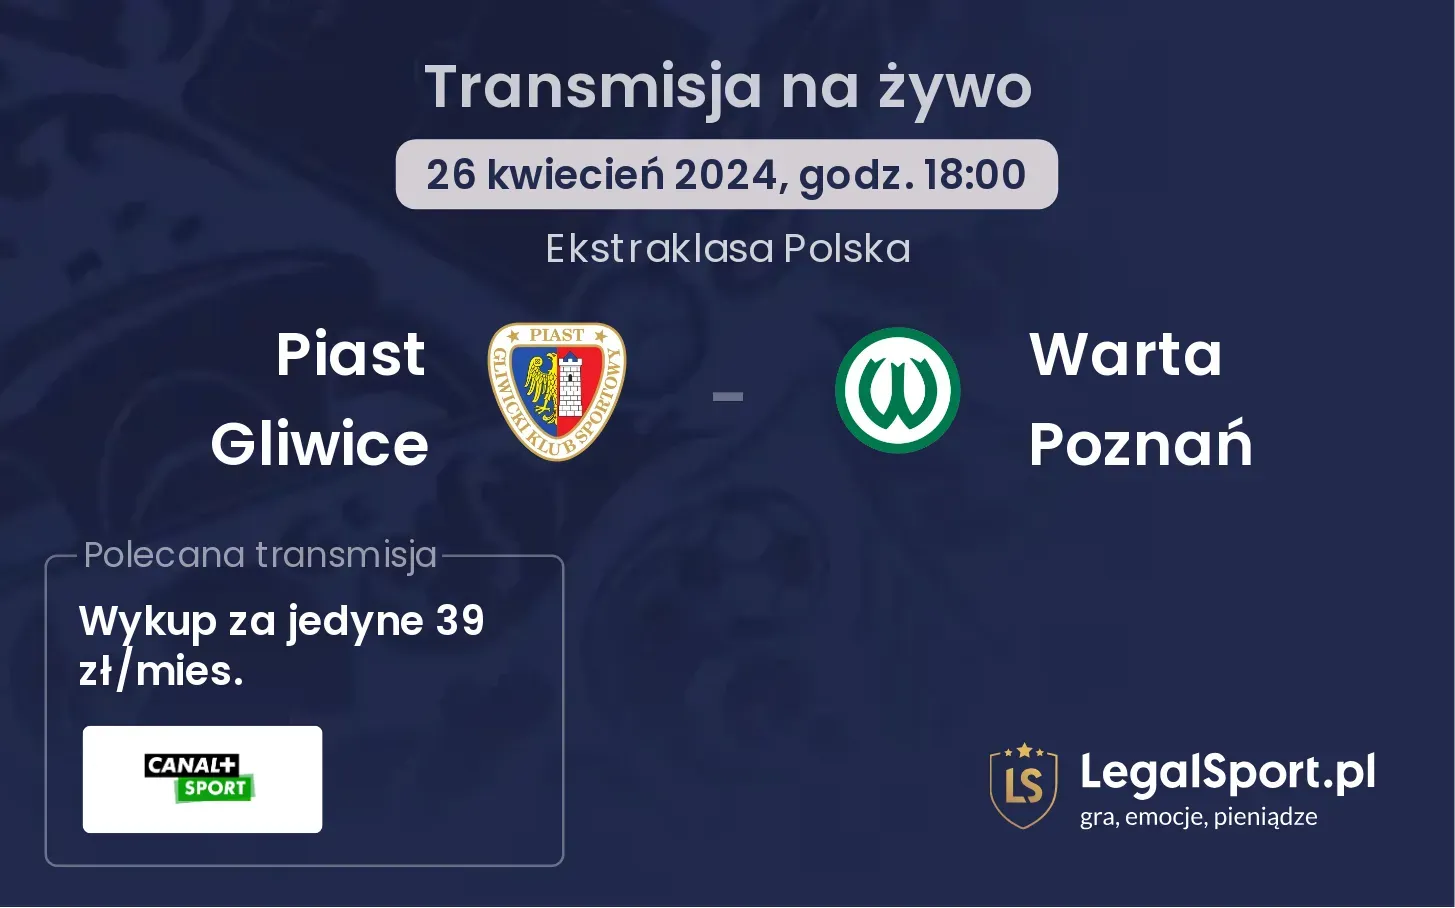 Piast Gliwice - Warta Poznań transmisja na żywo